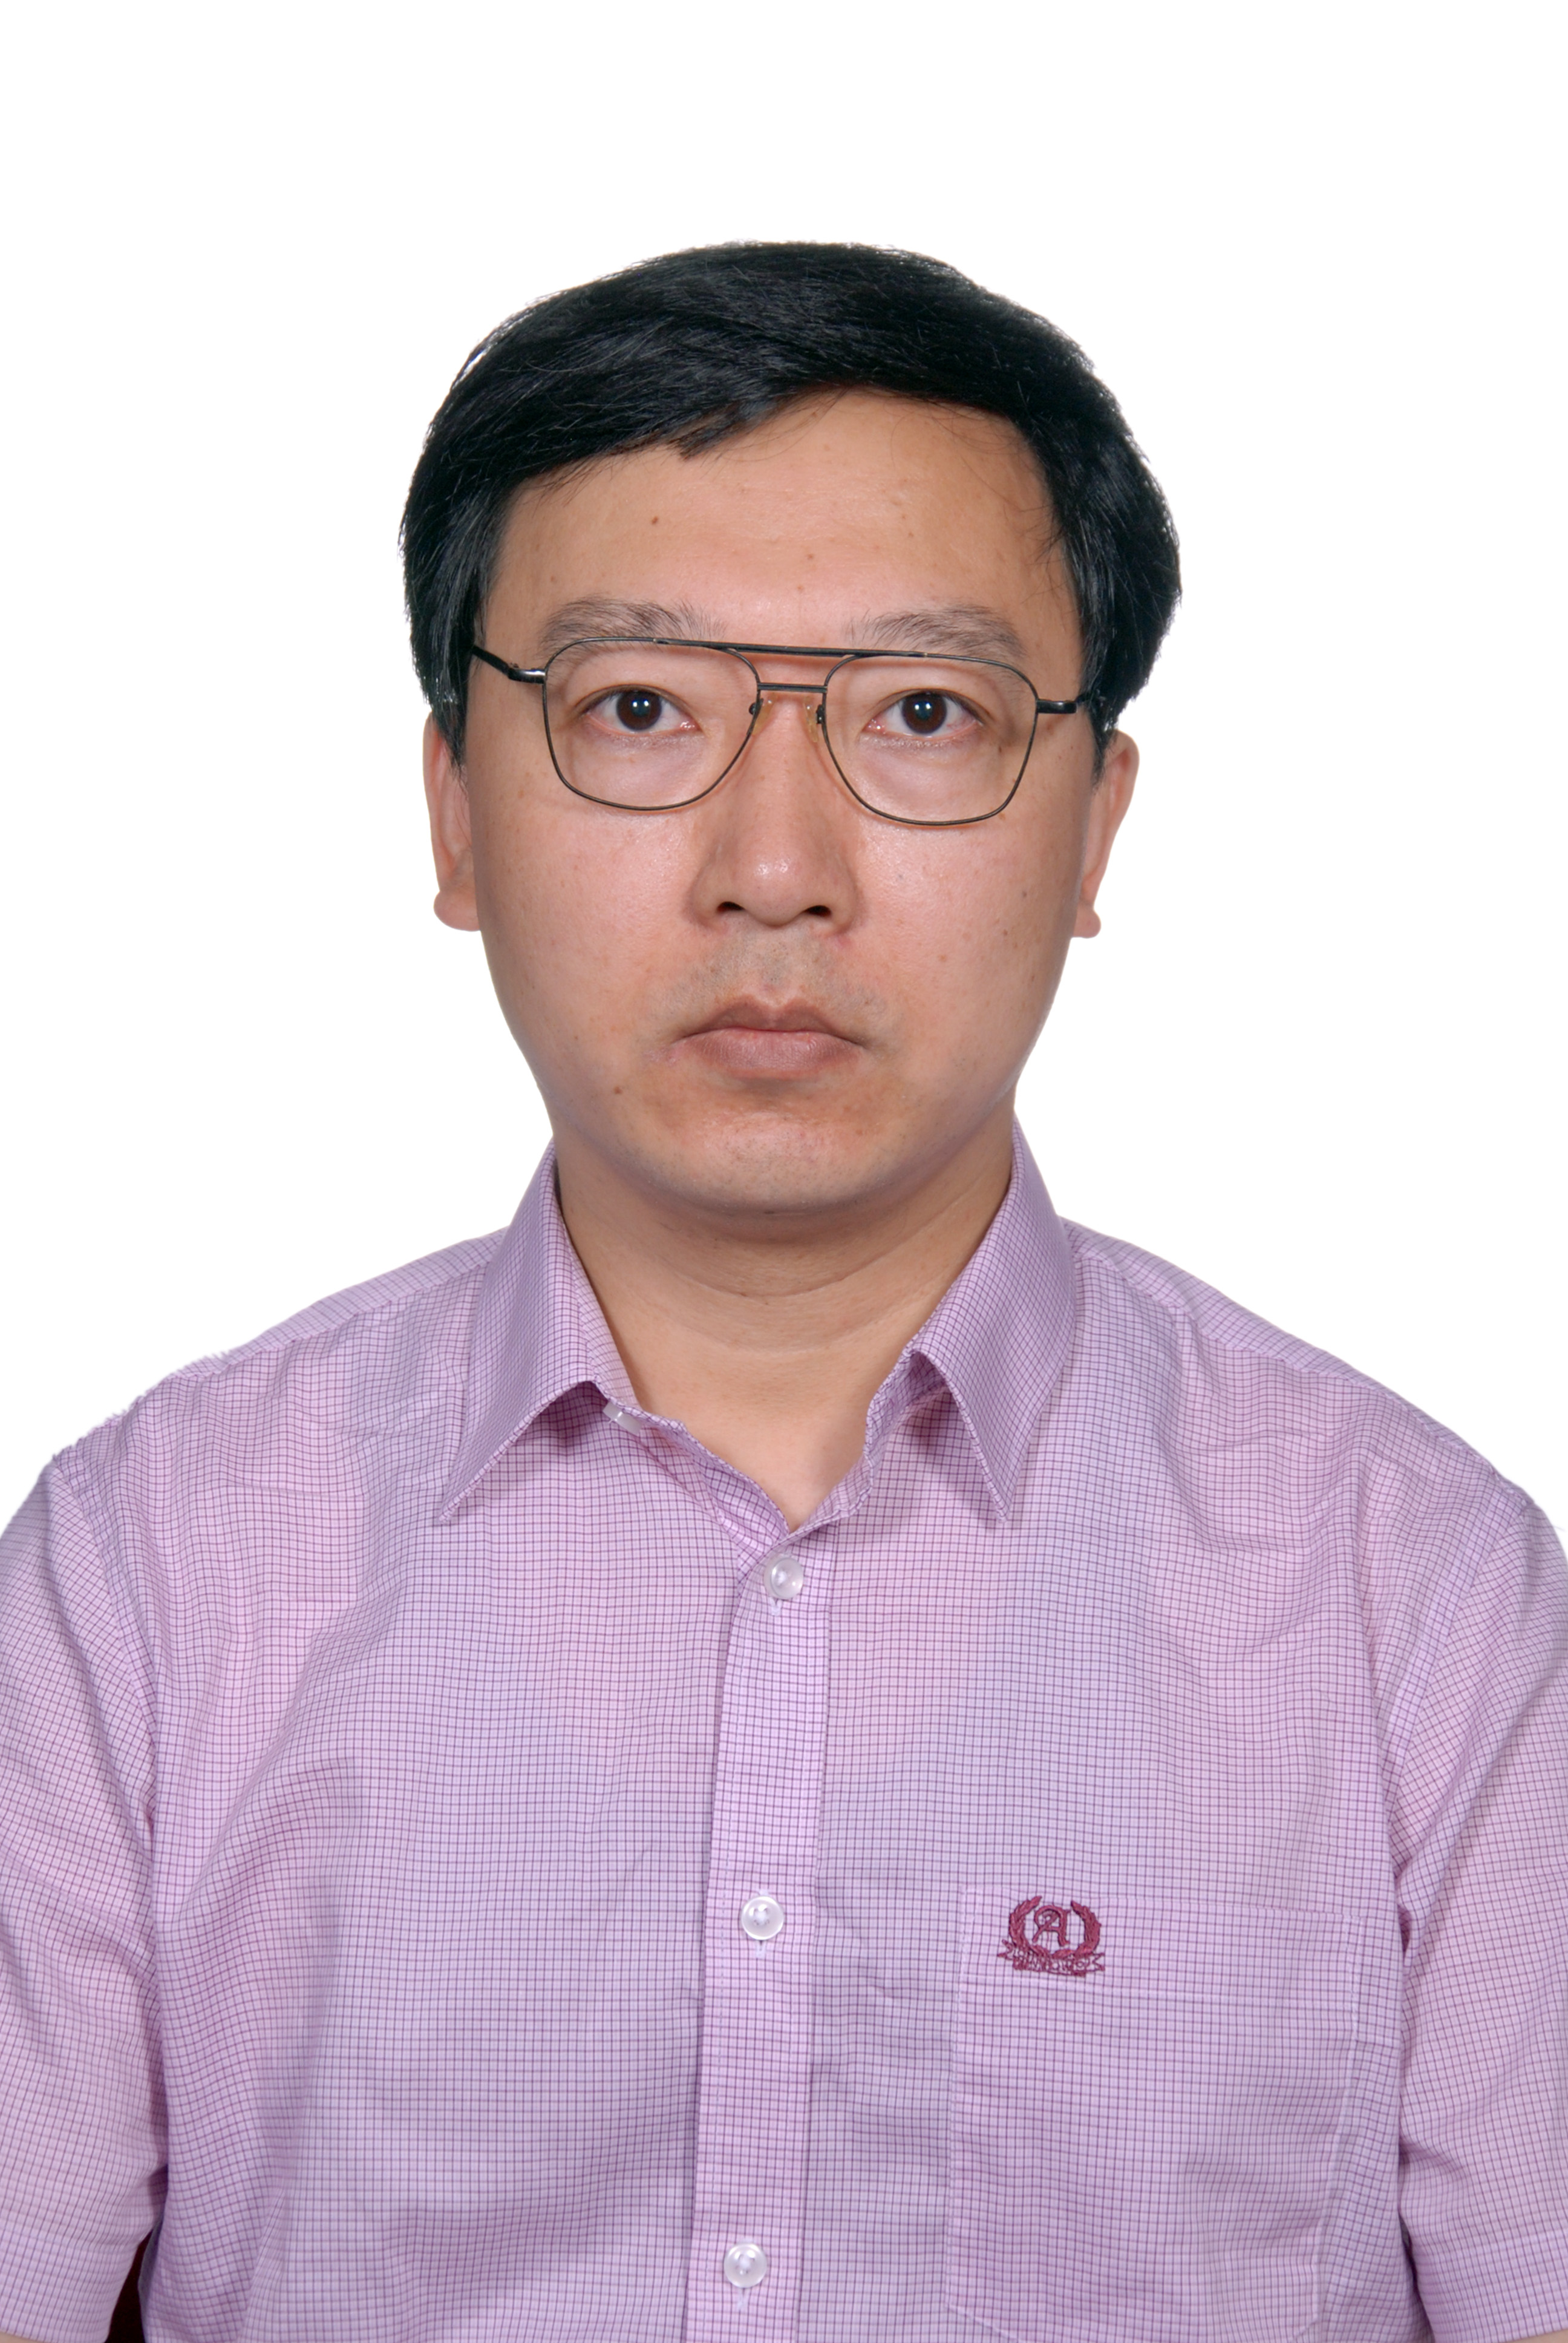 中国电信上海研究院物联网部 物联网首席专家王艺照片